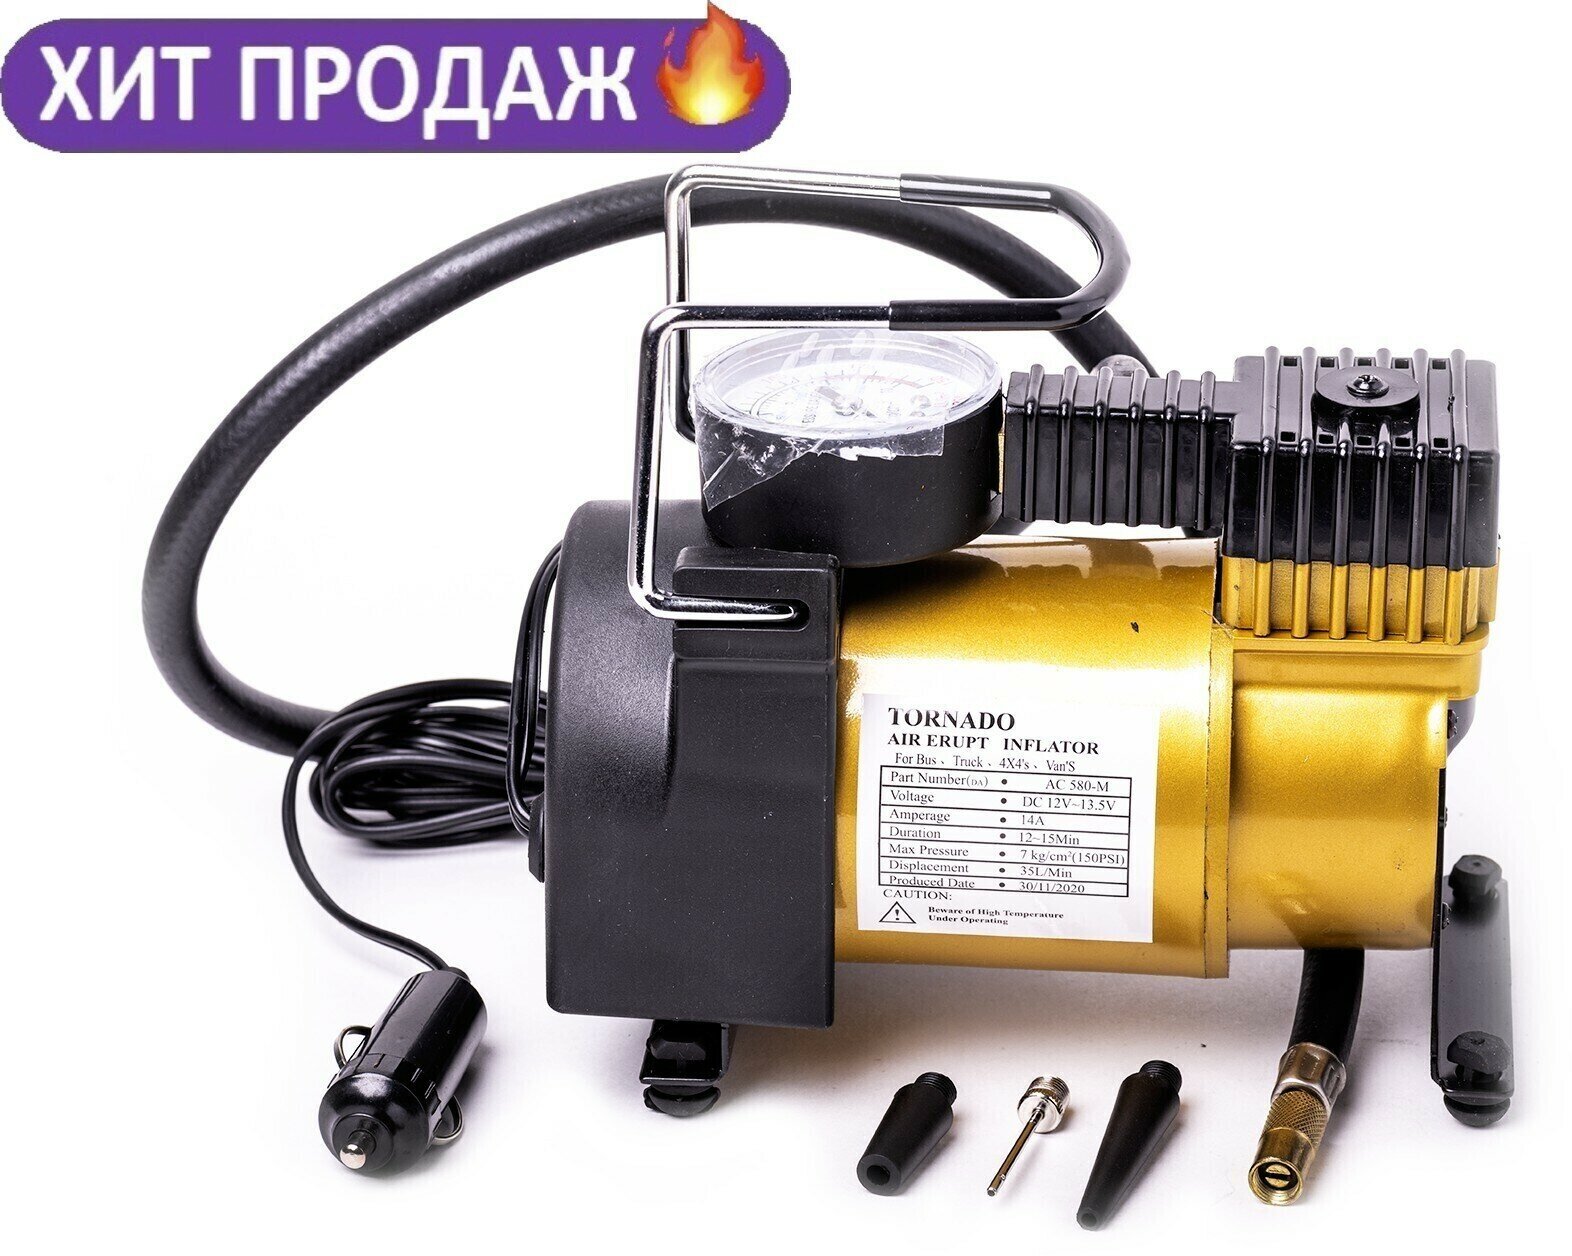 Автомобильный компрессор TORNADO АС-580 standart 35л/мин. 7 Атм. 140 Вт. Чехол в комплекте.